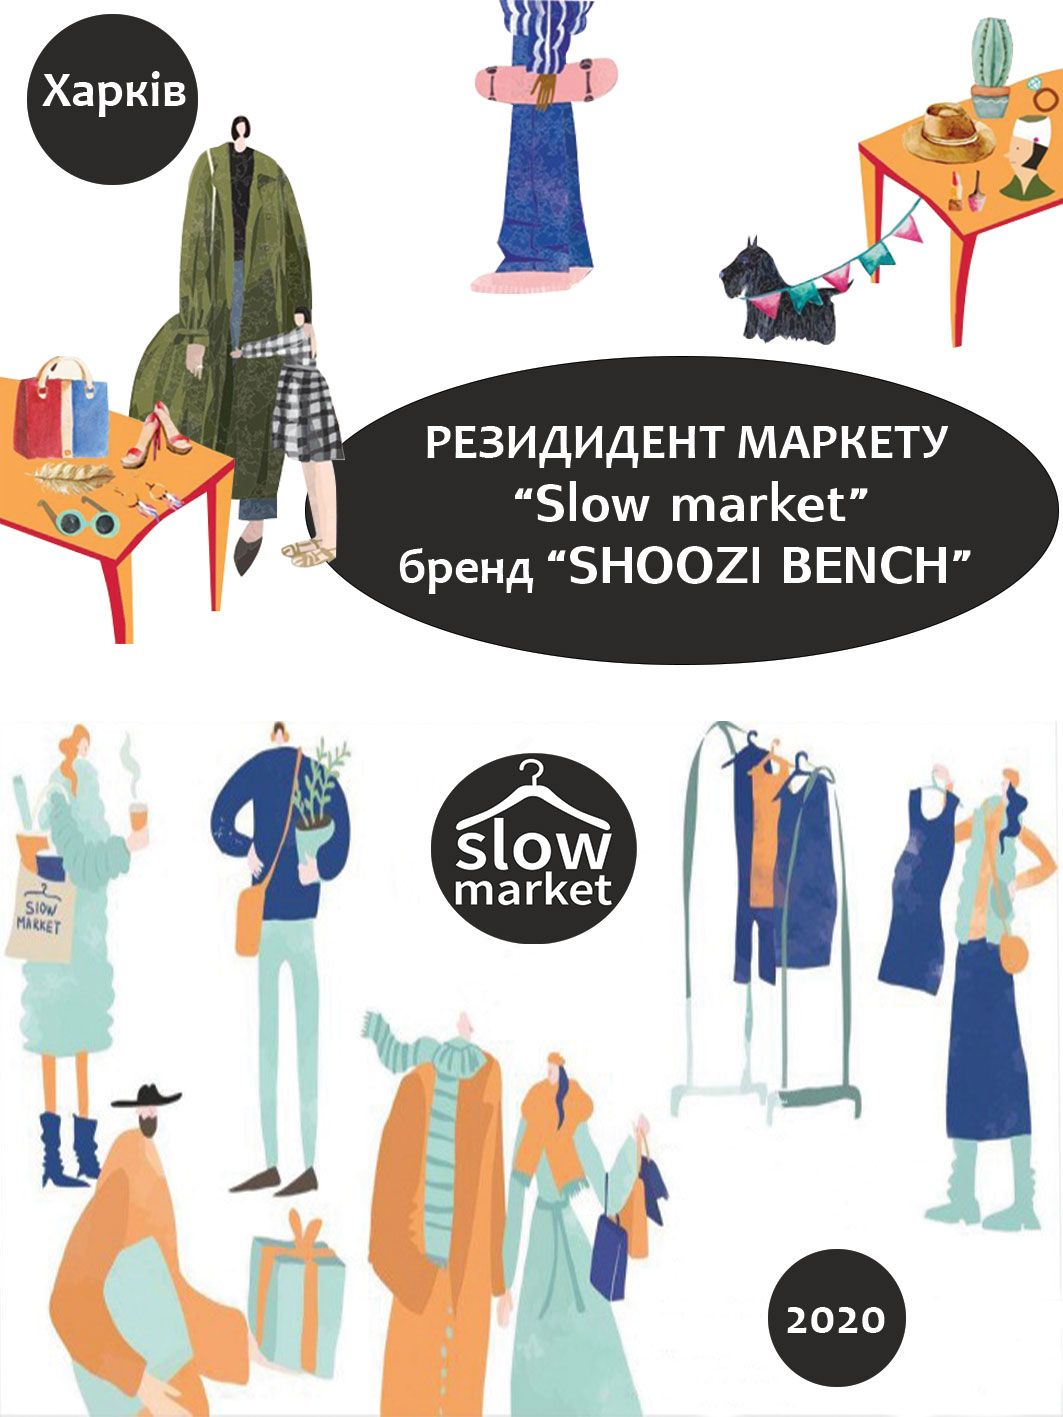 Shoozi bench - резидент маркета "Slow marcet"